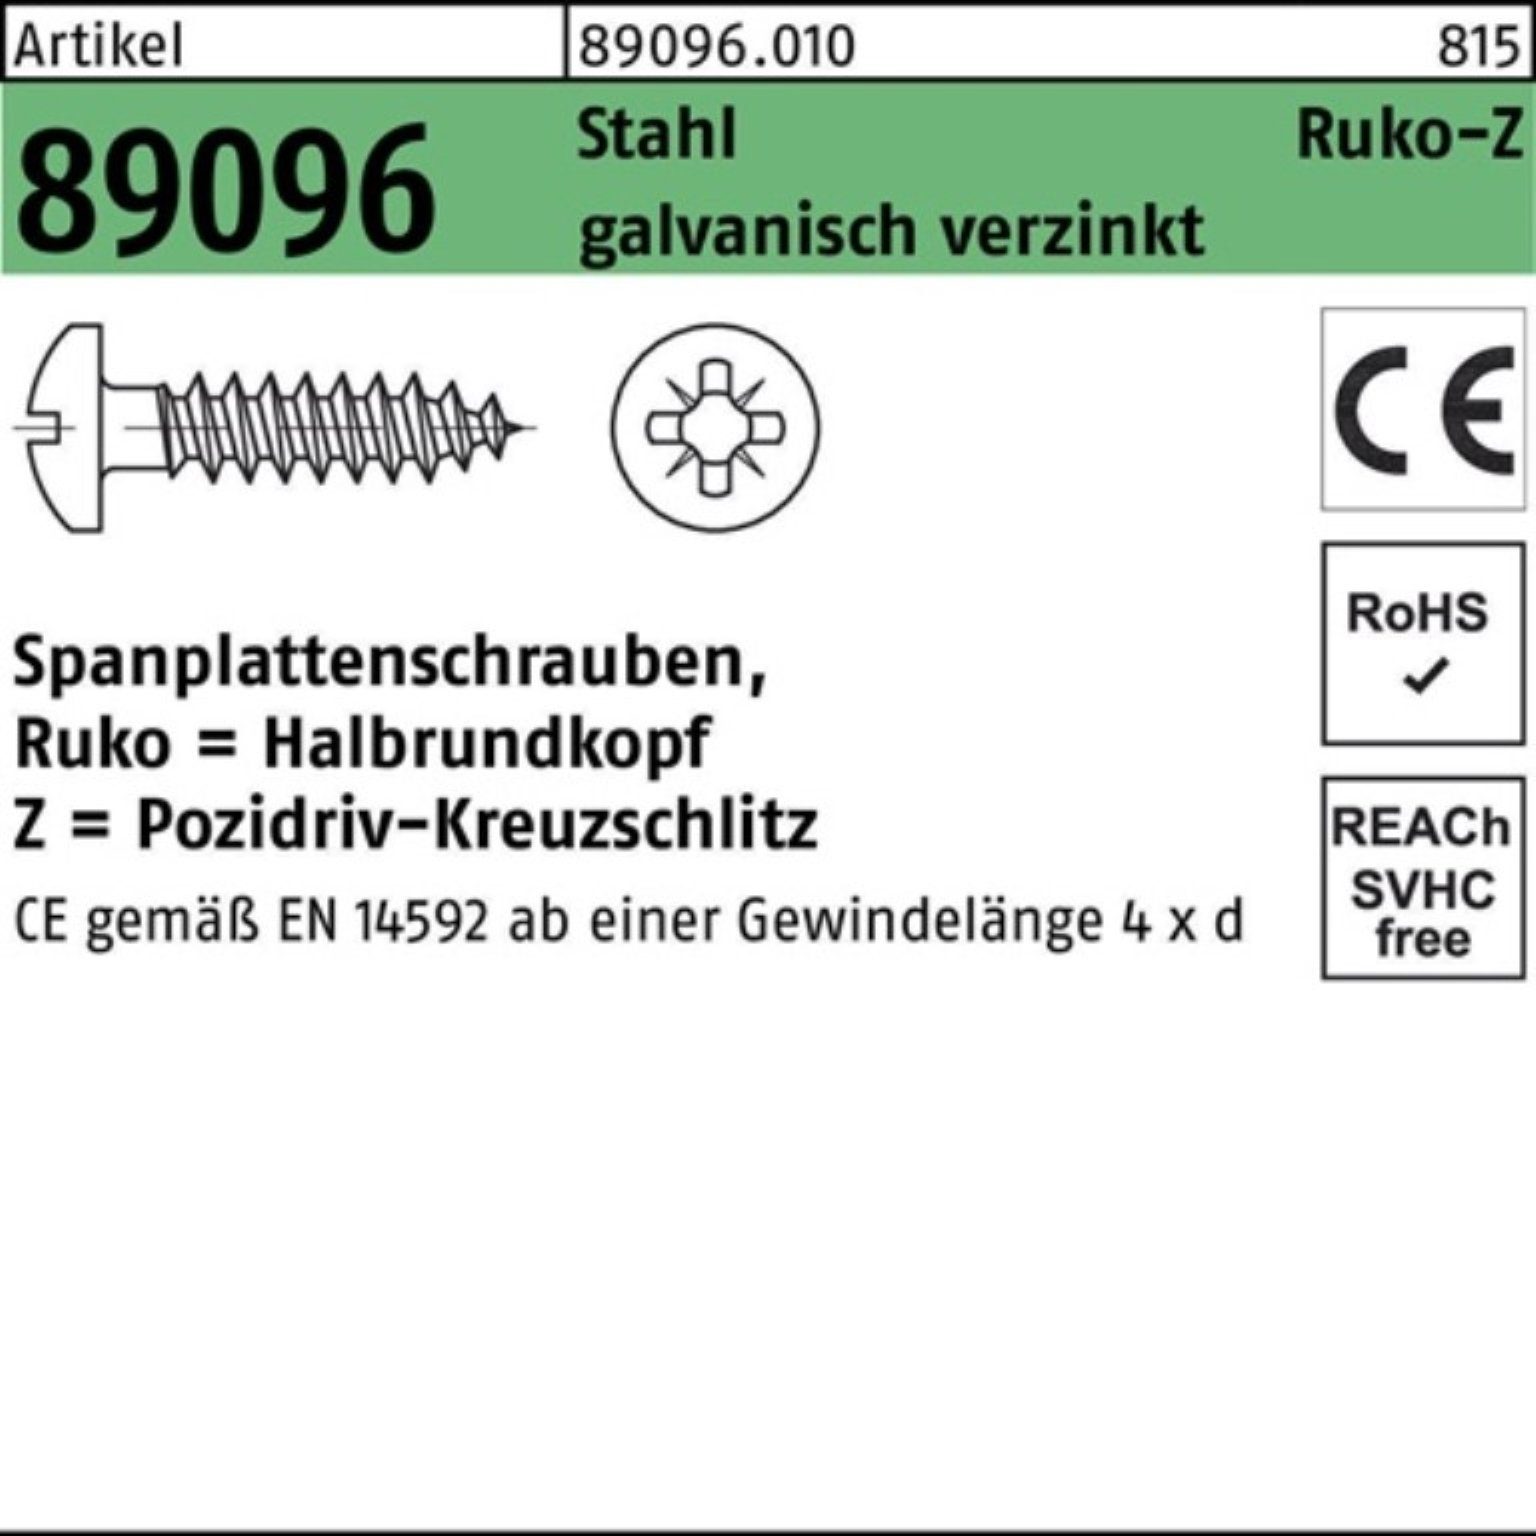 Reyher Spanplattenschraube 1000er Spanplattenschraube Stahl galv.verz PZ HAKO Pack 3x16-Z R 89096